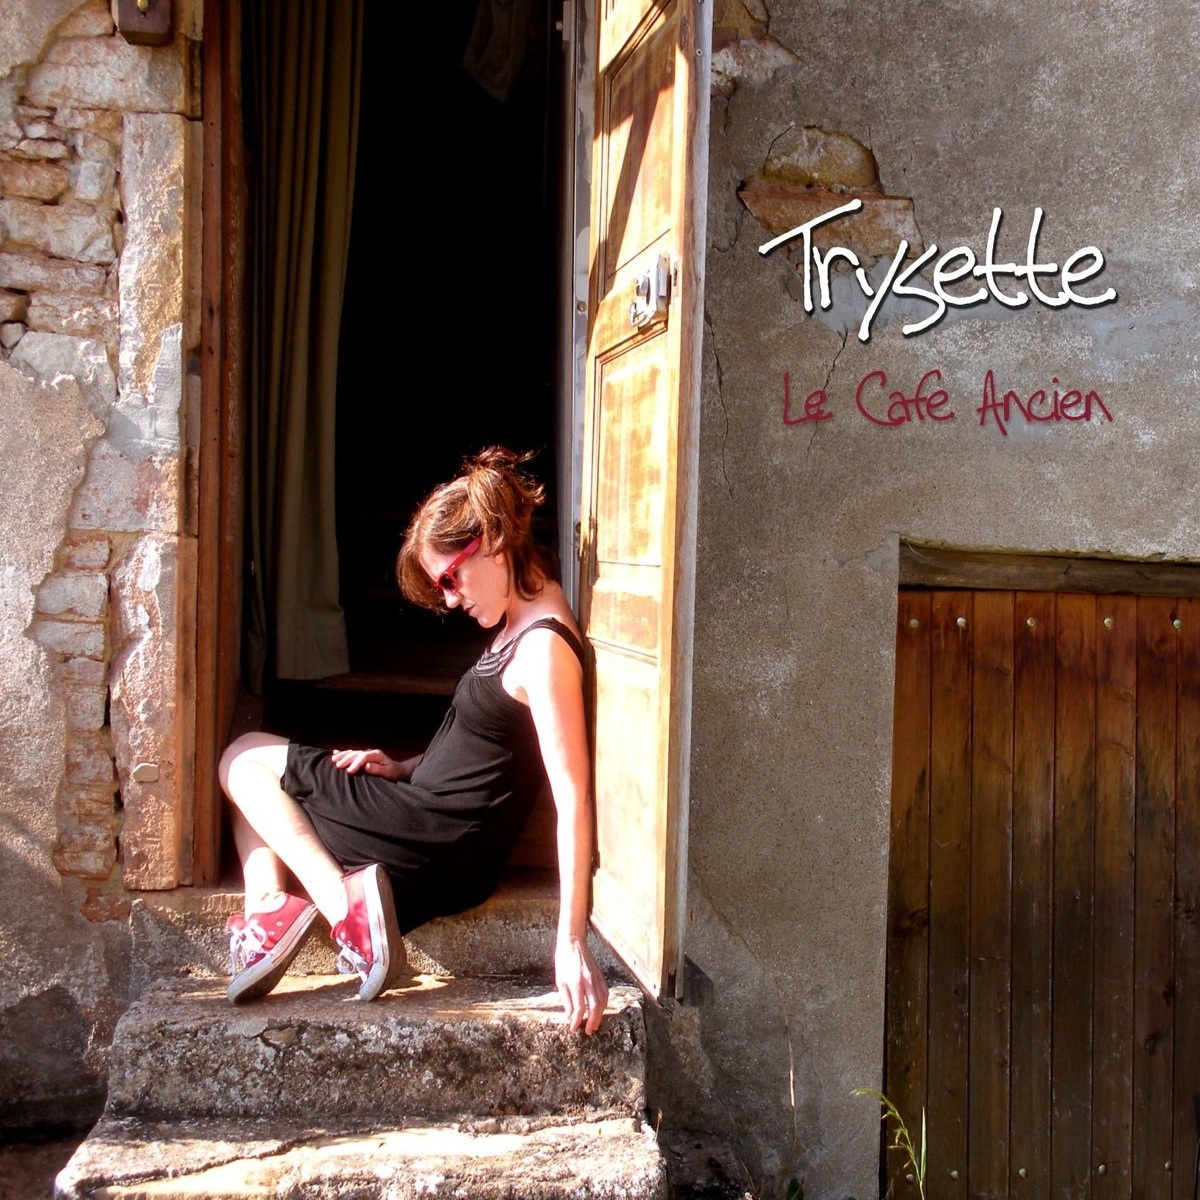 Trysette's album Le Cafe Ancien